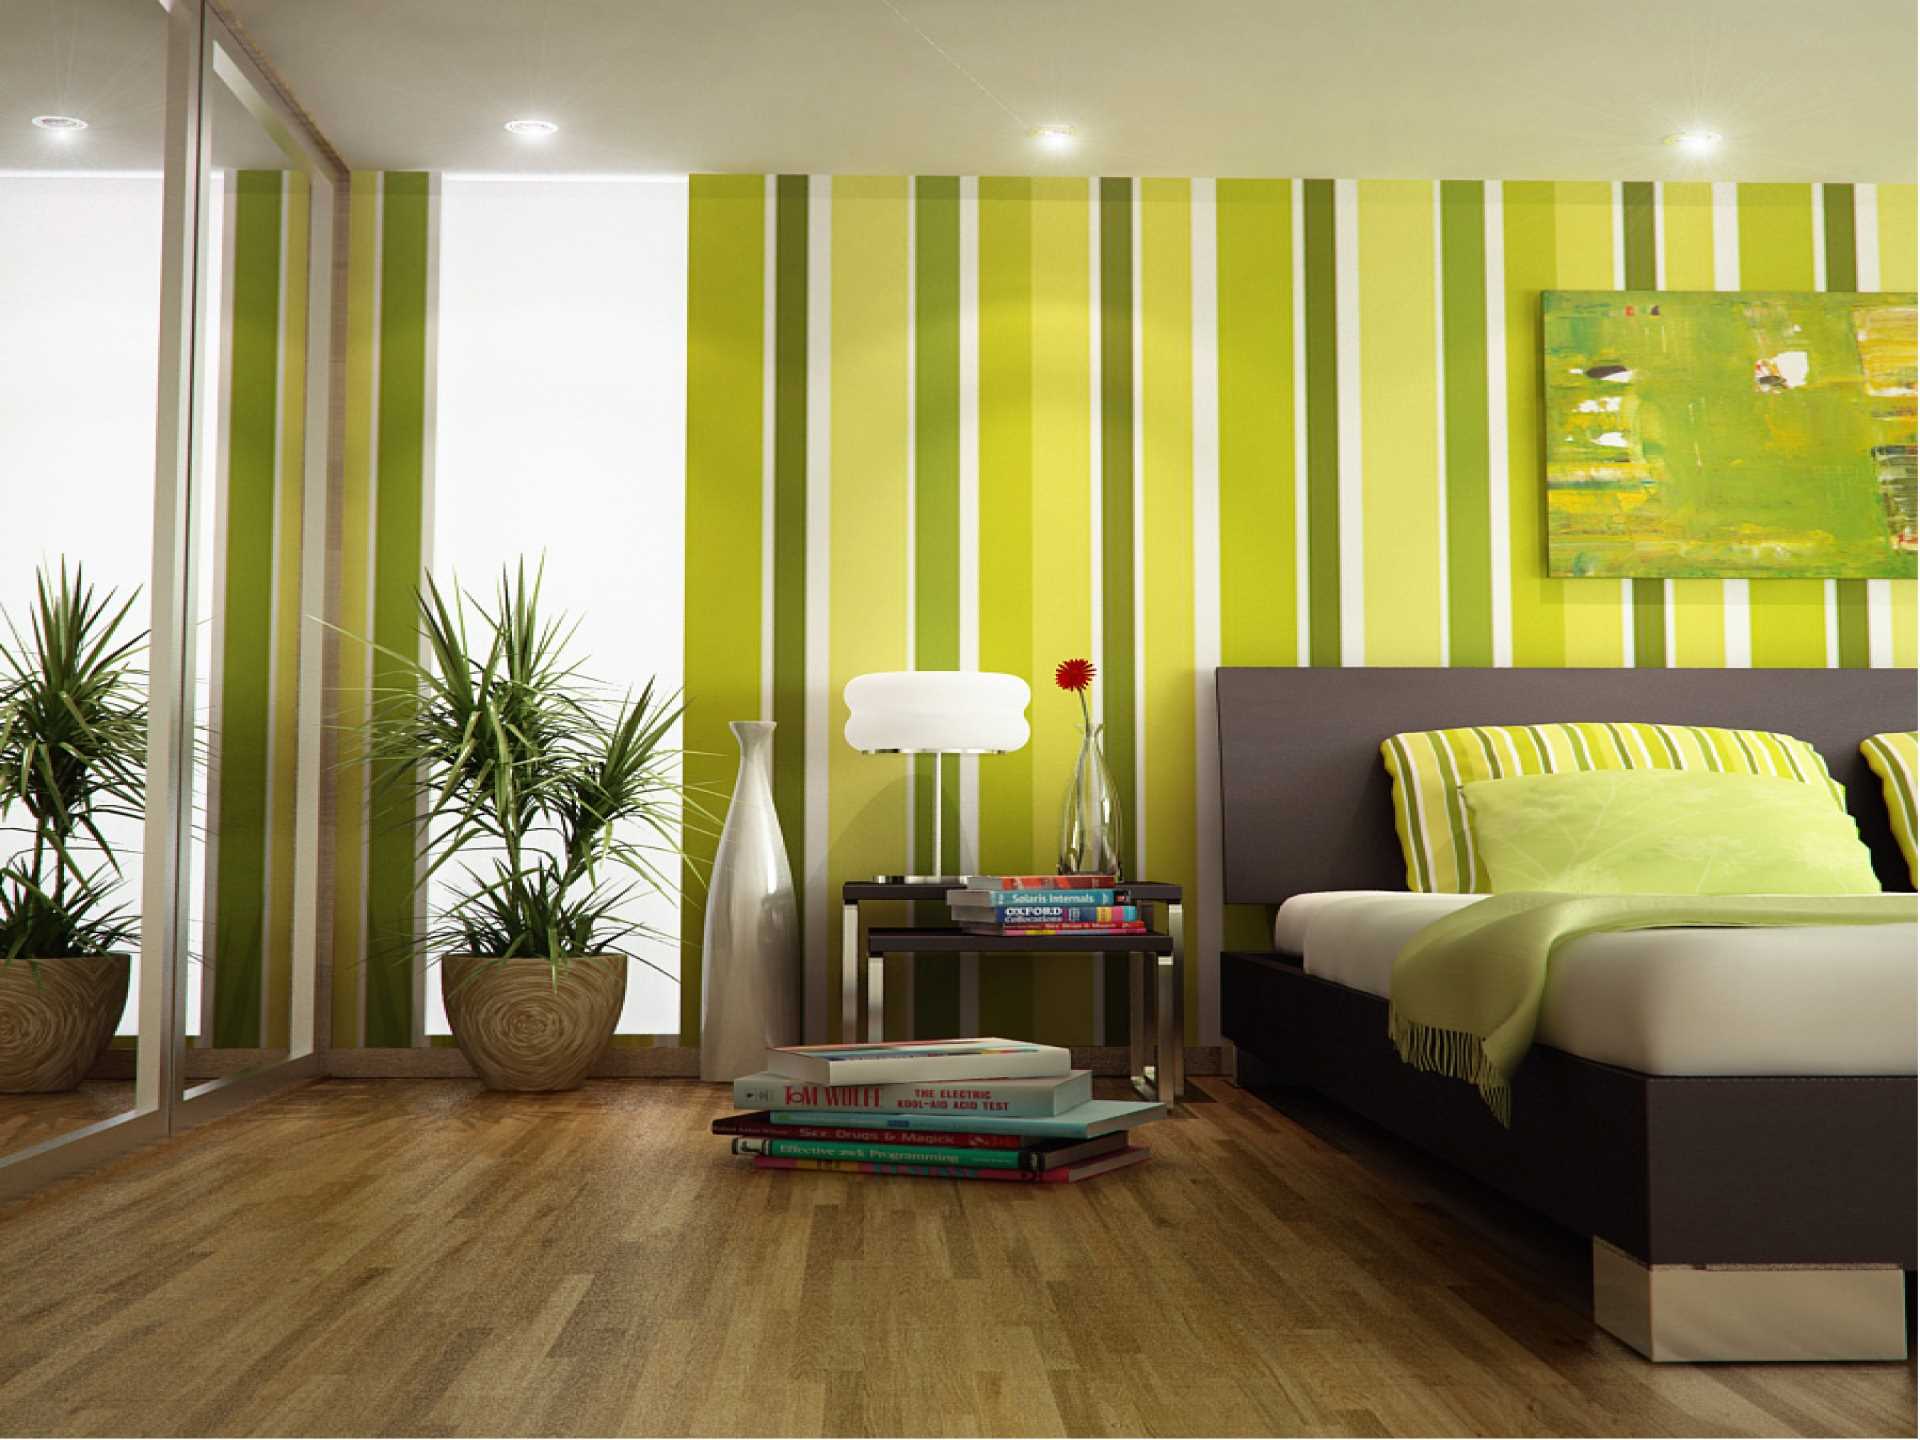 l'idea di utilizzare il verde in un bellissimo design della stanza